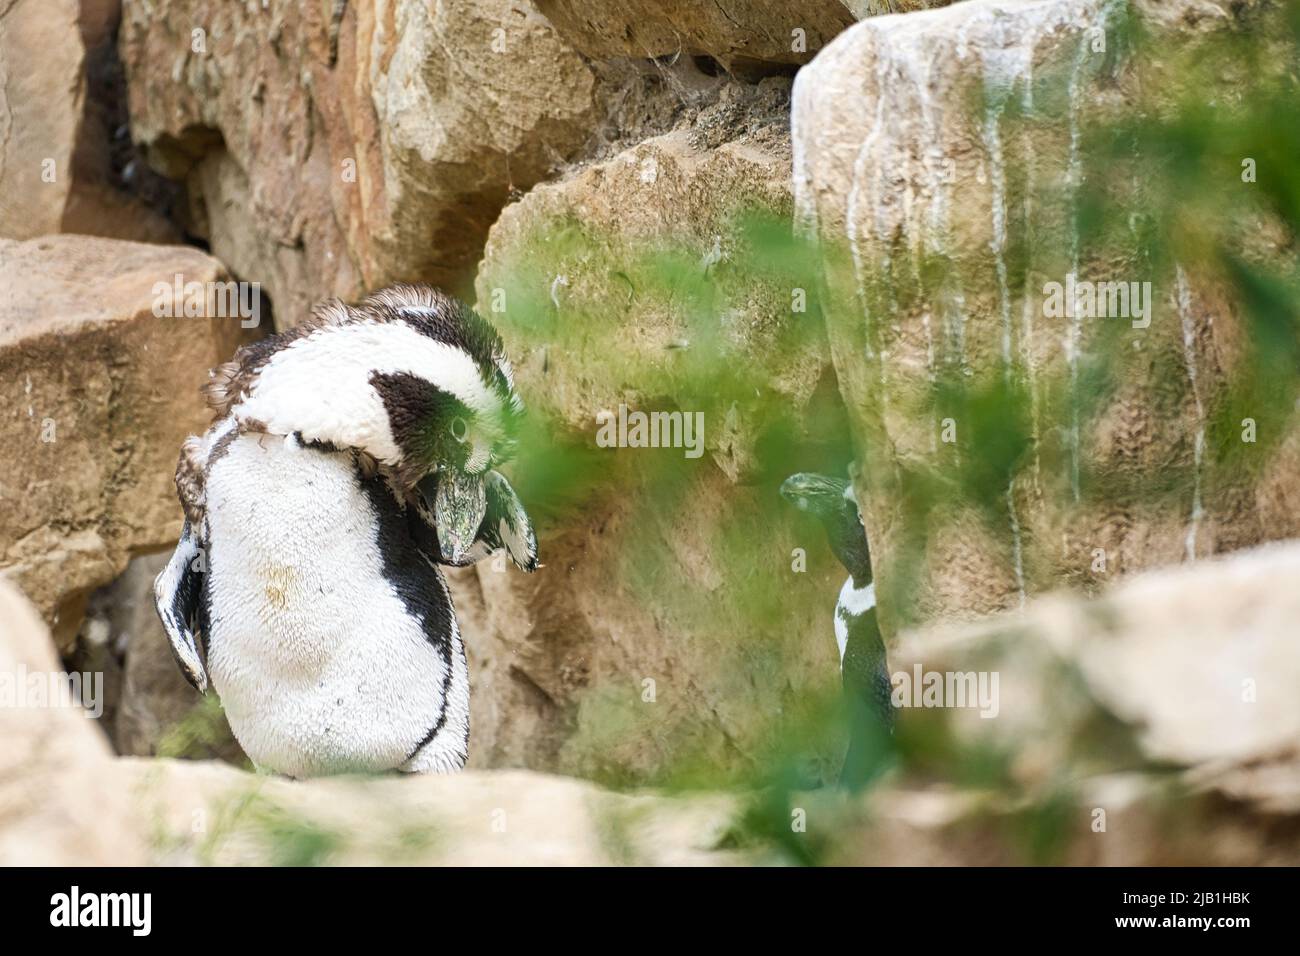 Pinguine mit schwarzen und weißen Federn Tierfoto in Nahaufnahme des Vogels. Detaillierte Aufnahme Stockfoto